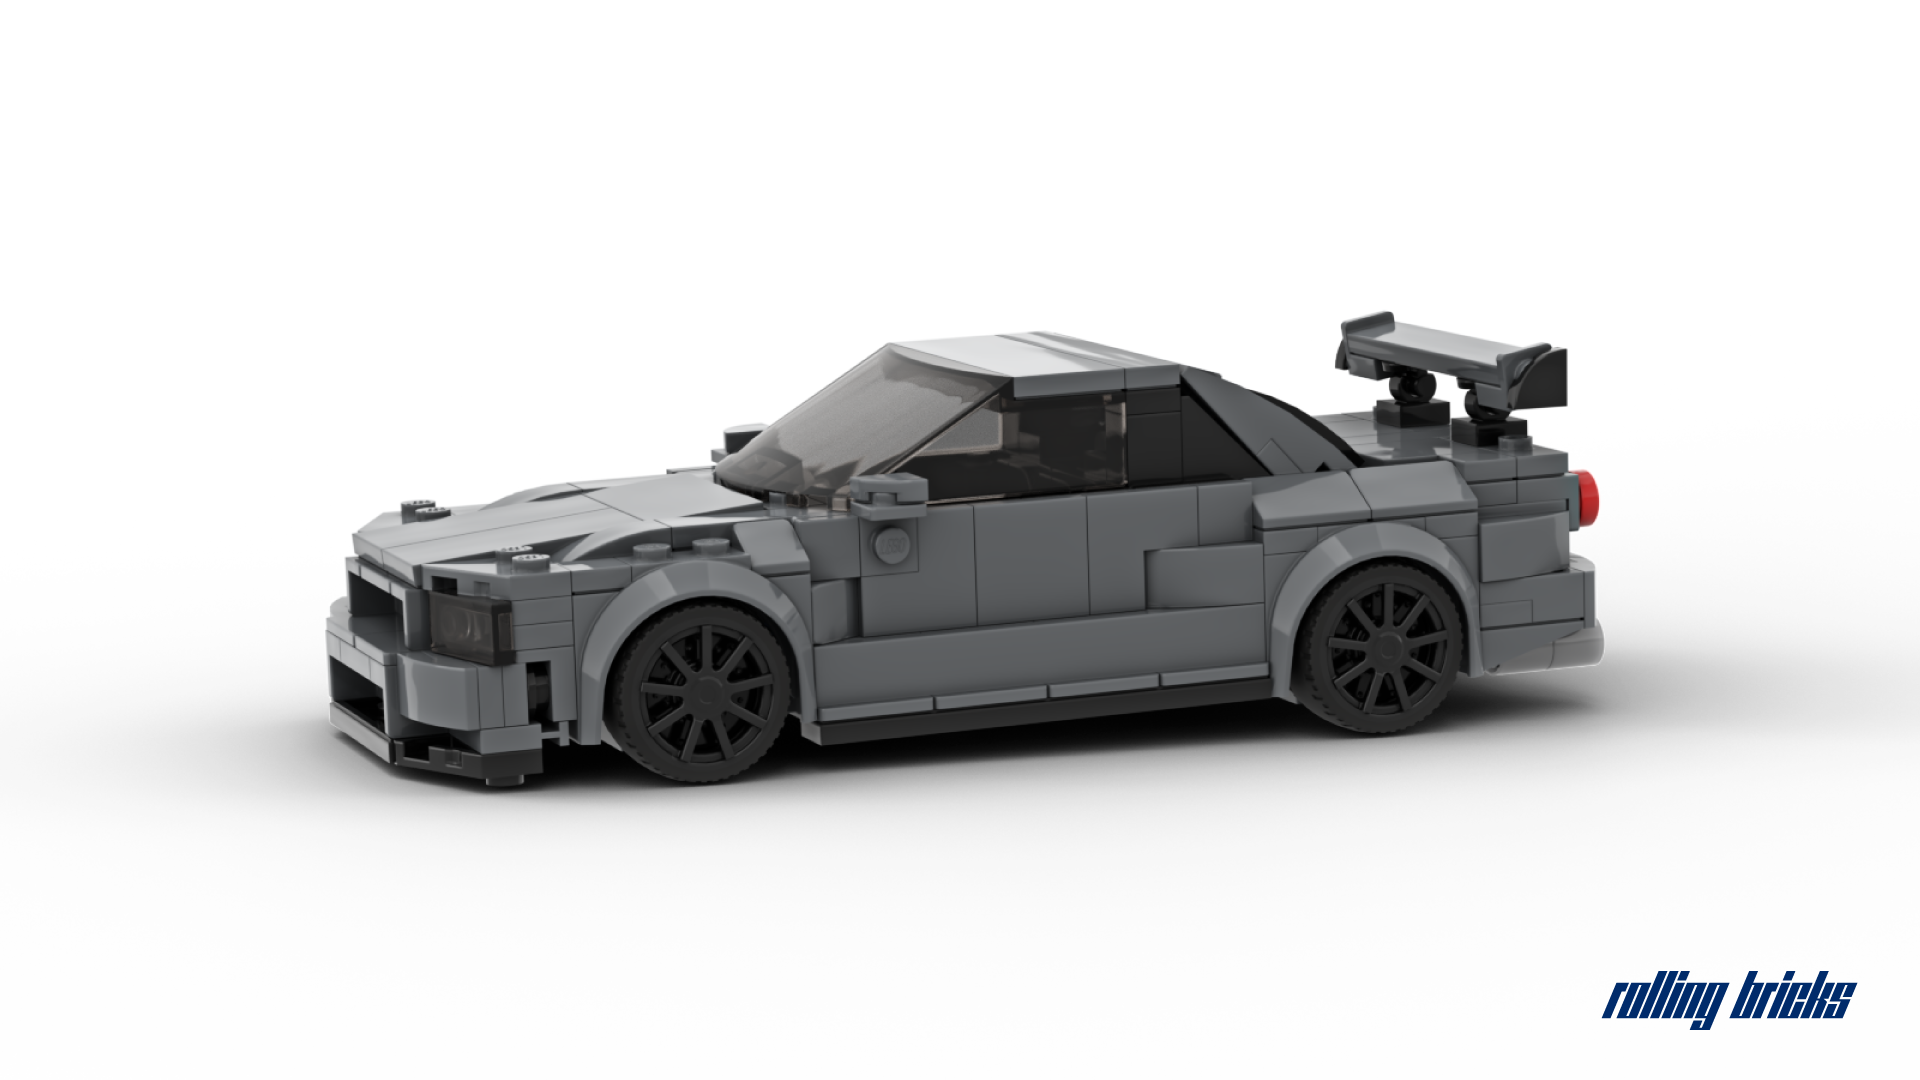 LEGO MOC Nissan Skyline GT-R R34 by _dm_designs_au_